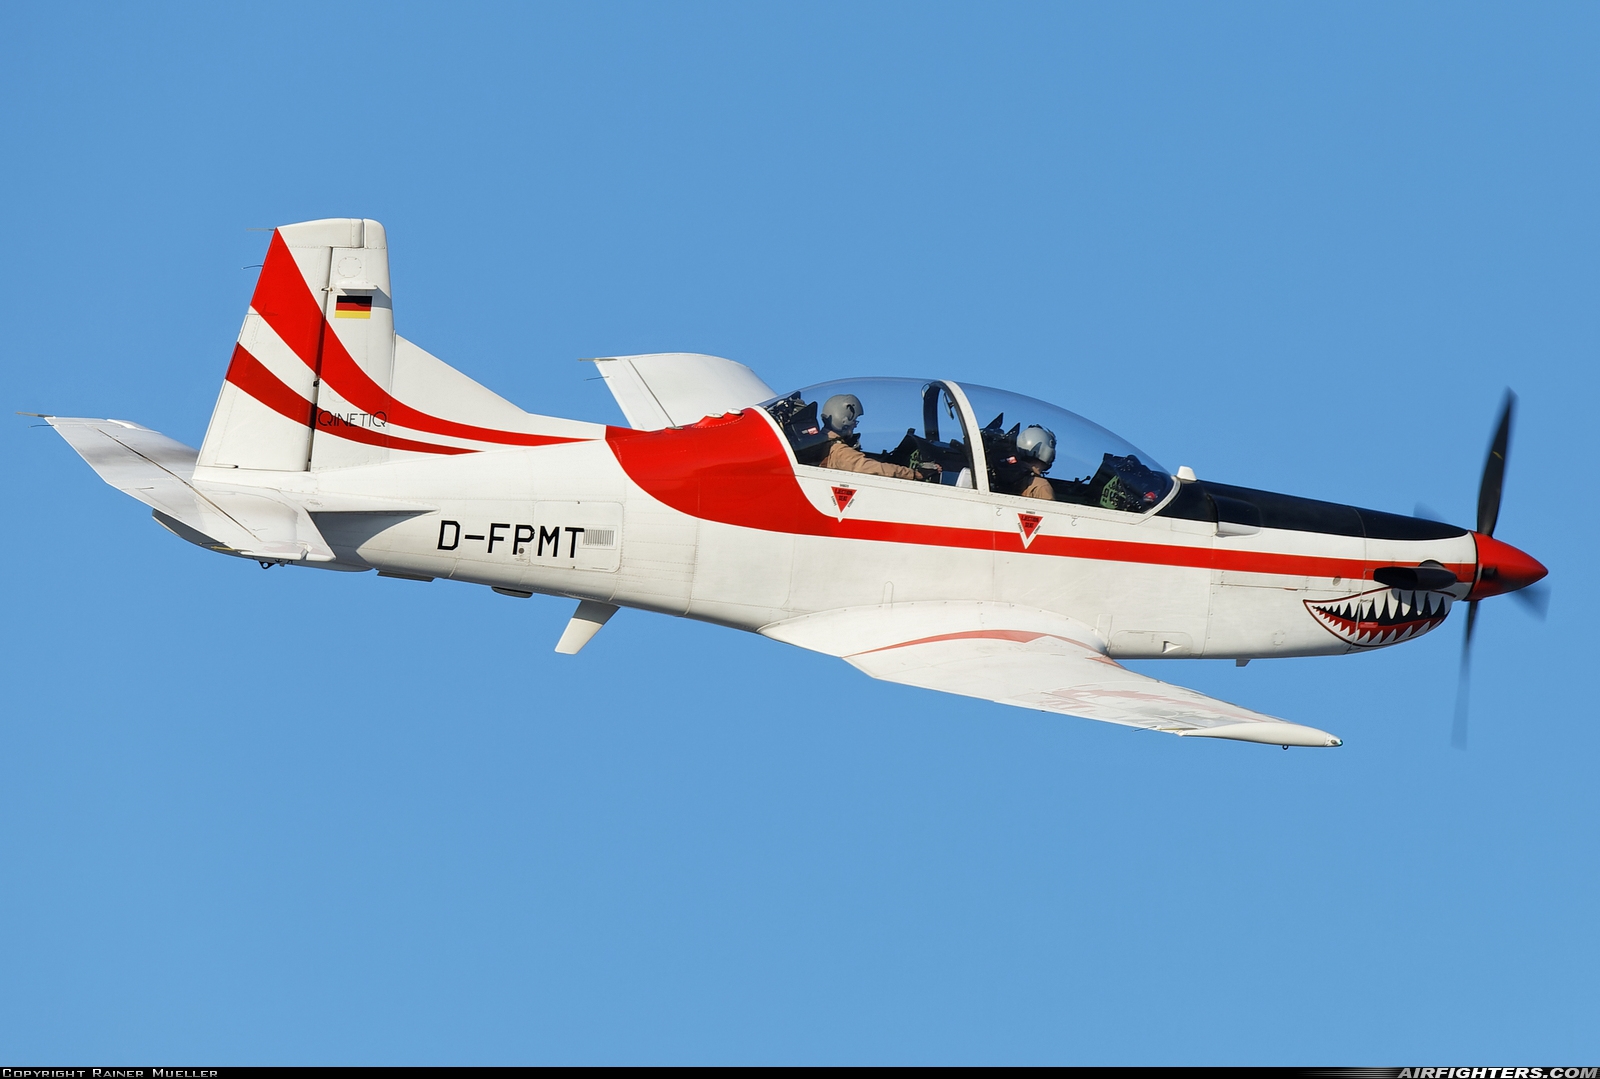 Company Owned - QinetiQ Pilatus PC-9B D-FPMT at Wunstorf (ETNW), Germany